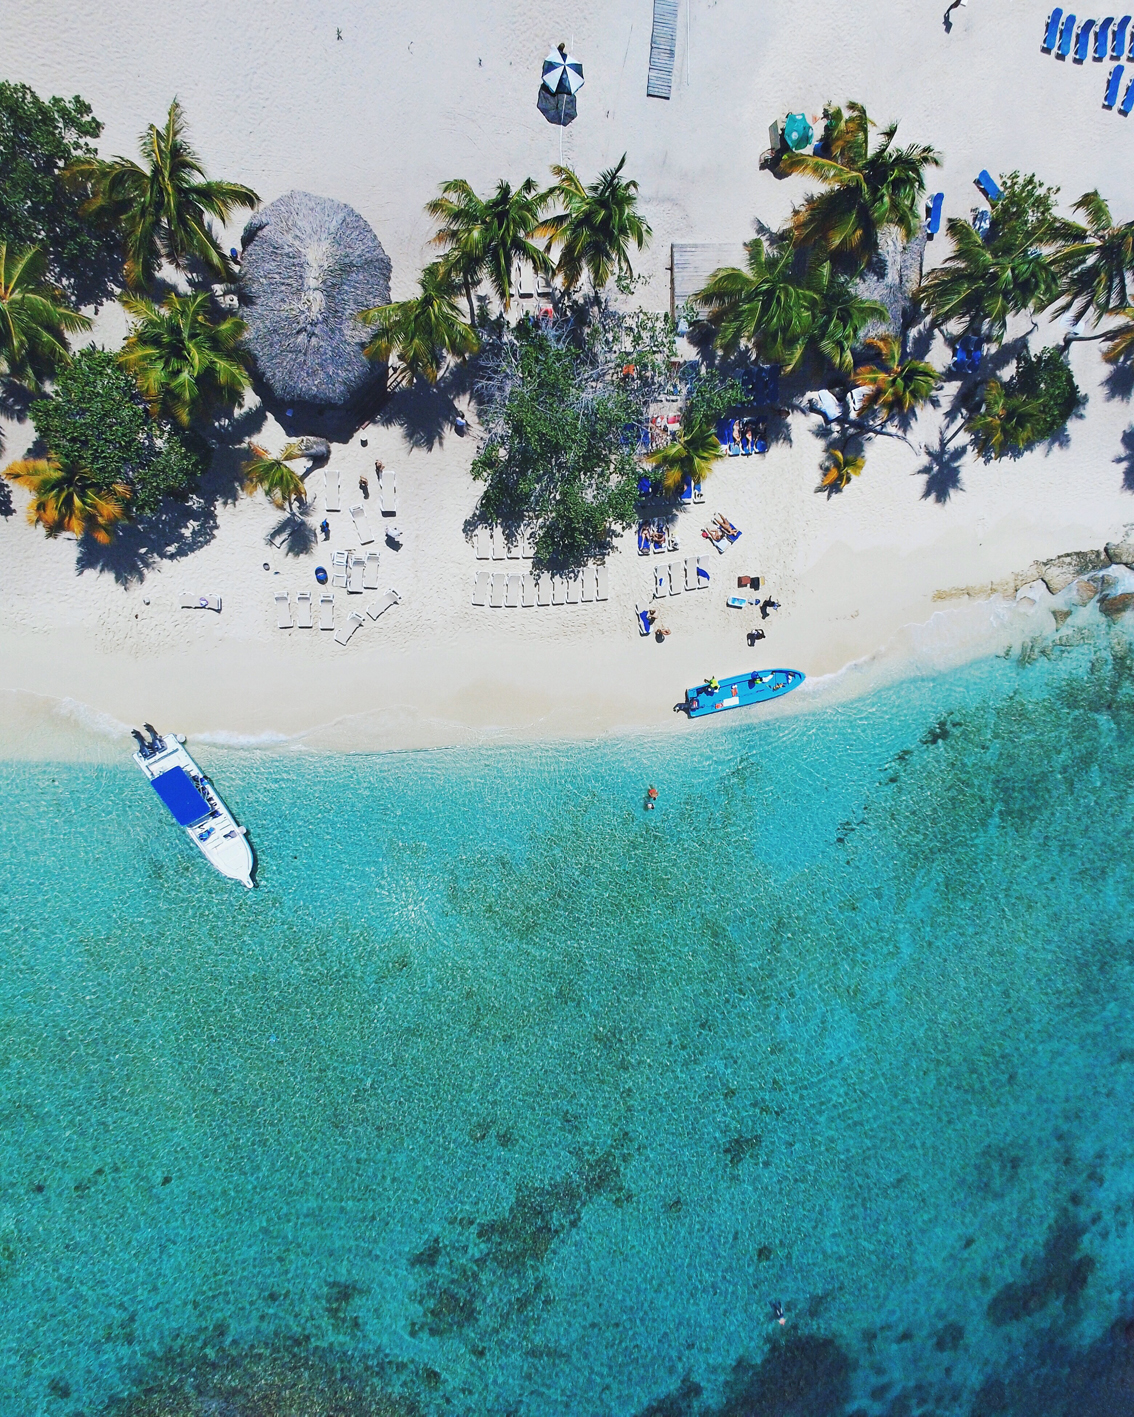 3-1 Viva Dominicus Beach, il mio viaggio ai Caraibi. Come può esser più bello il paradiso?